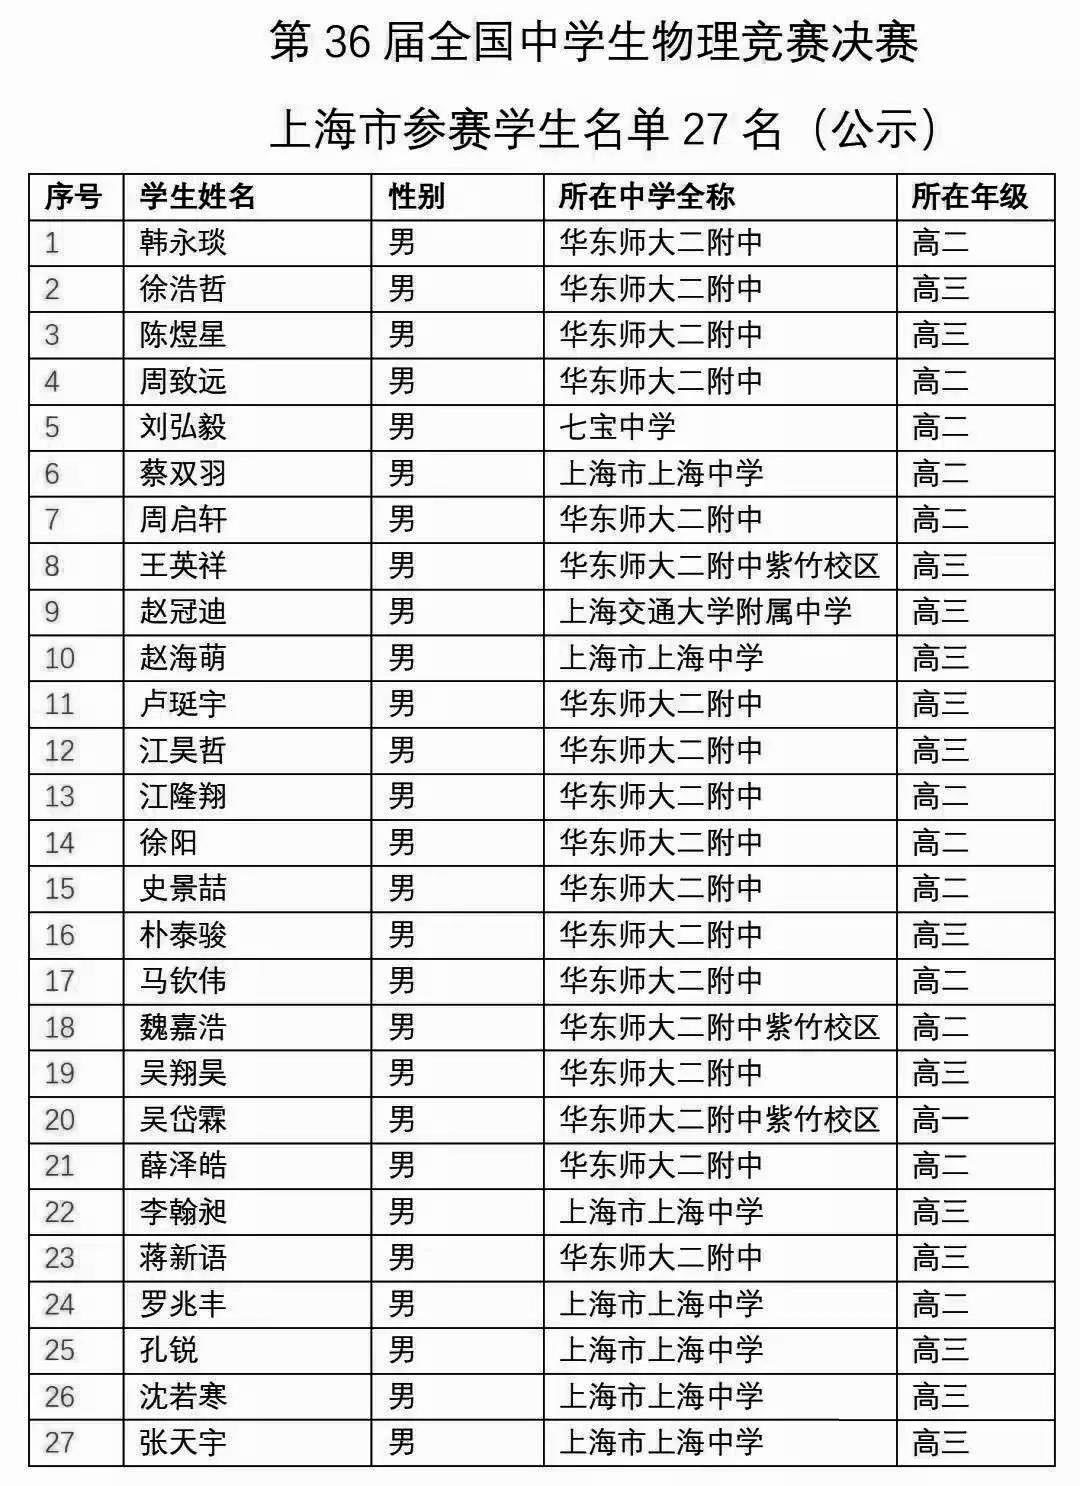 上海市2019年第36届全国中学生物理竞赛省队名单